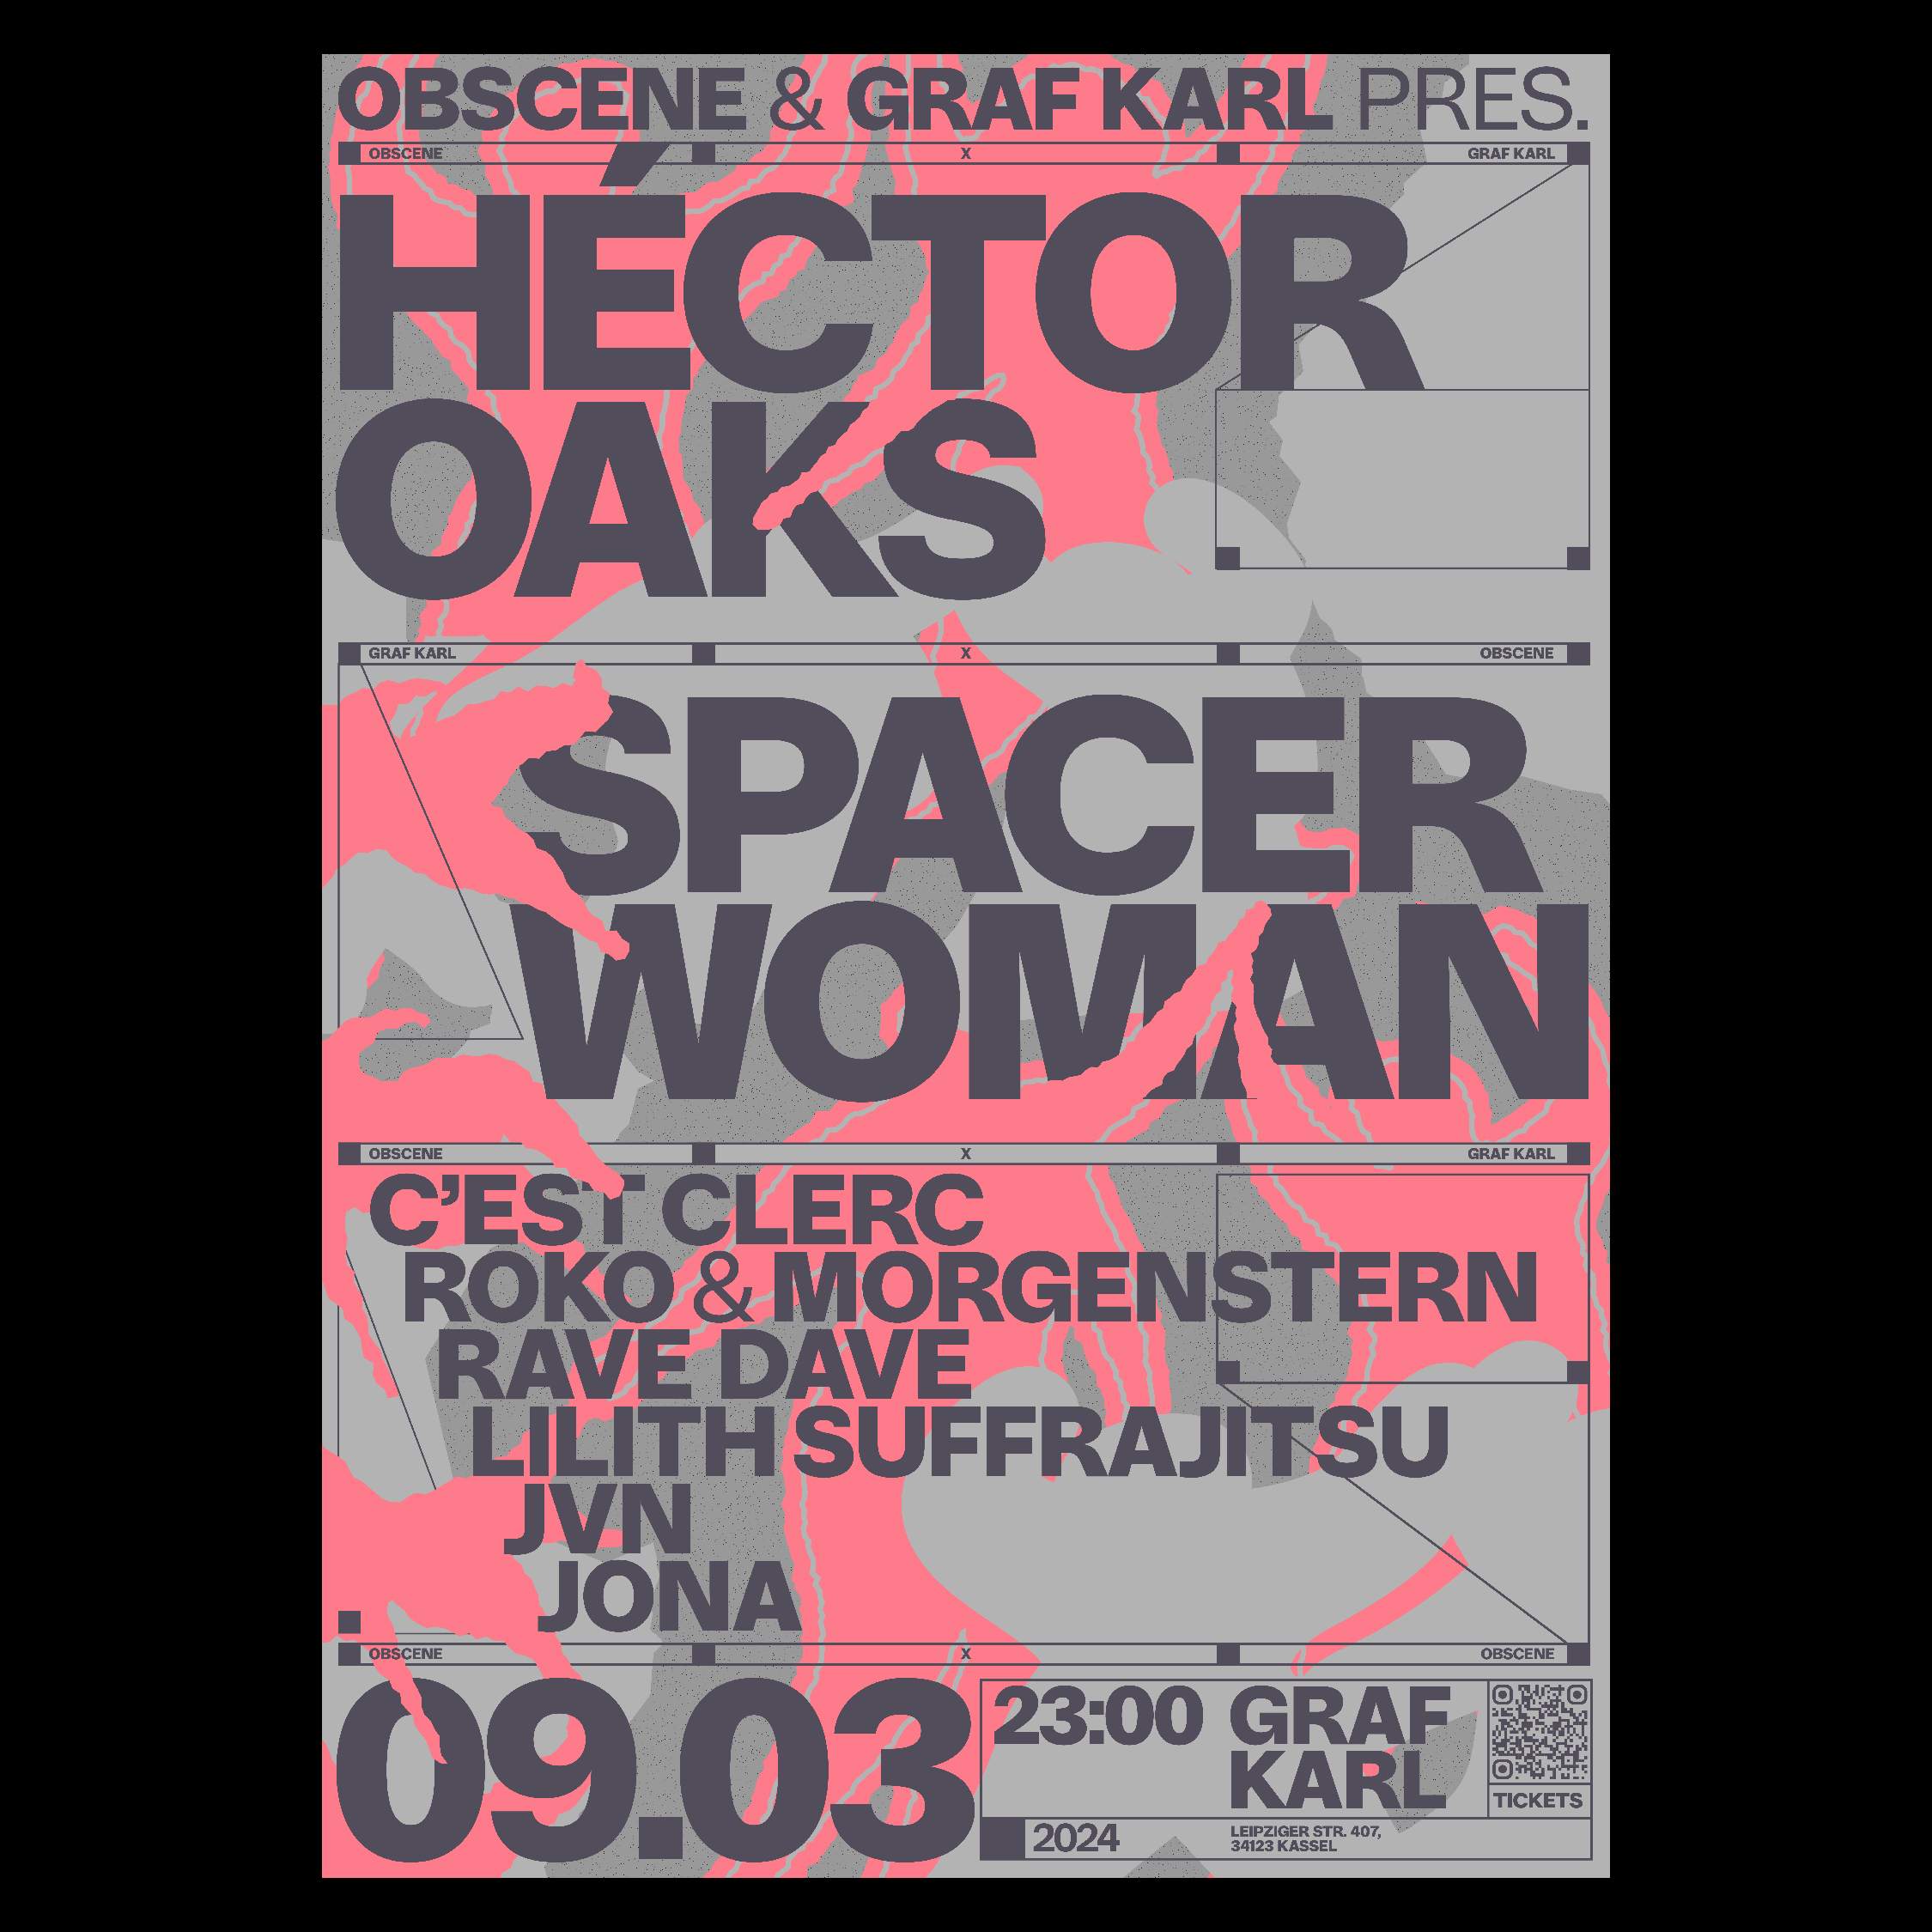 obscene & Graf Karl pres. Héctor Oaks - Página frontal